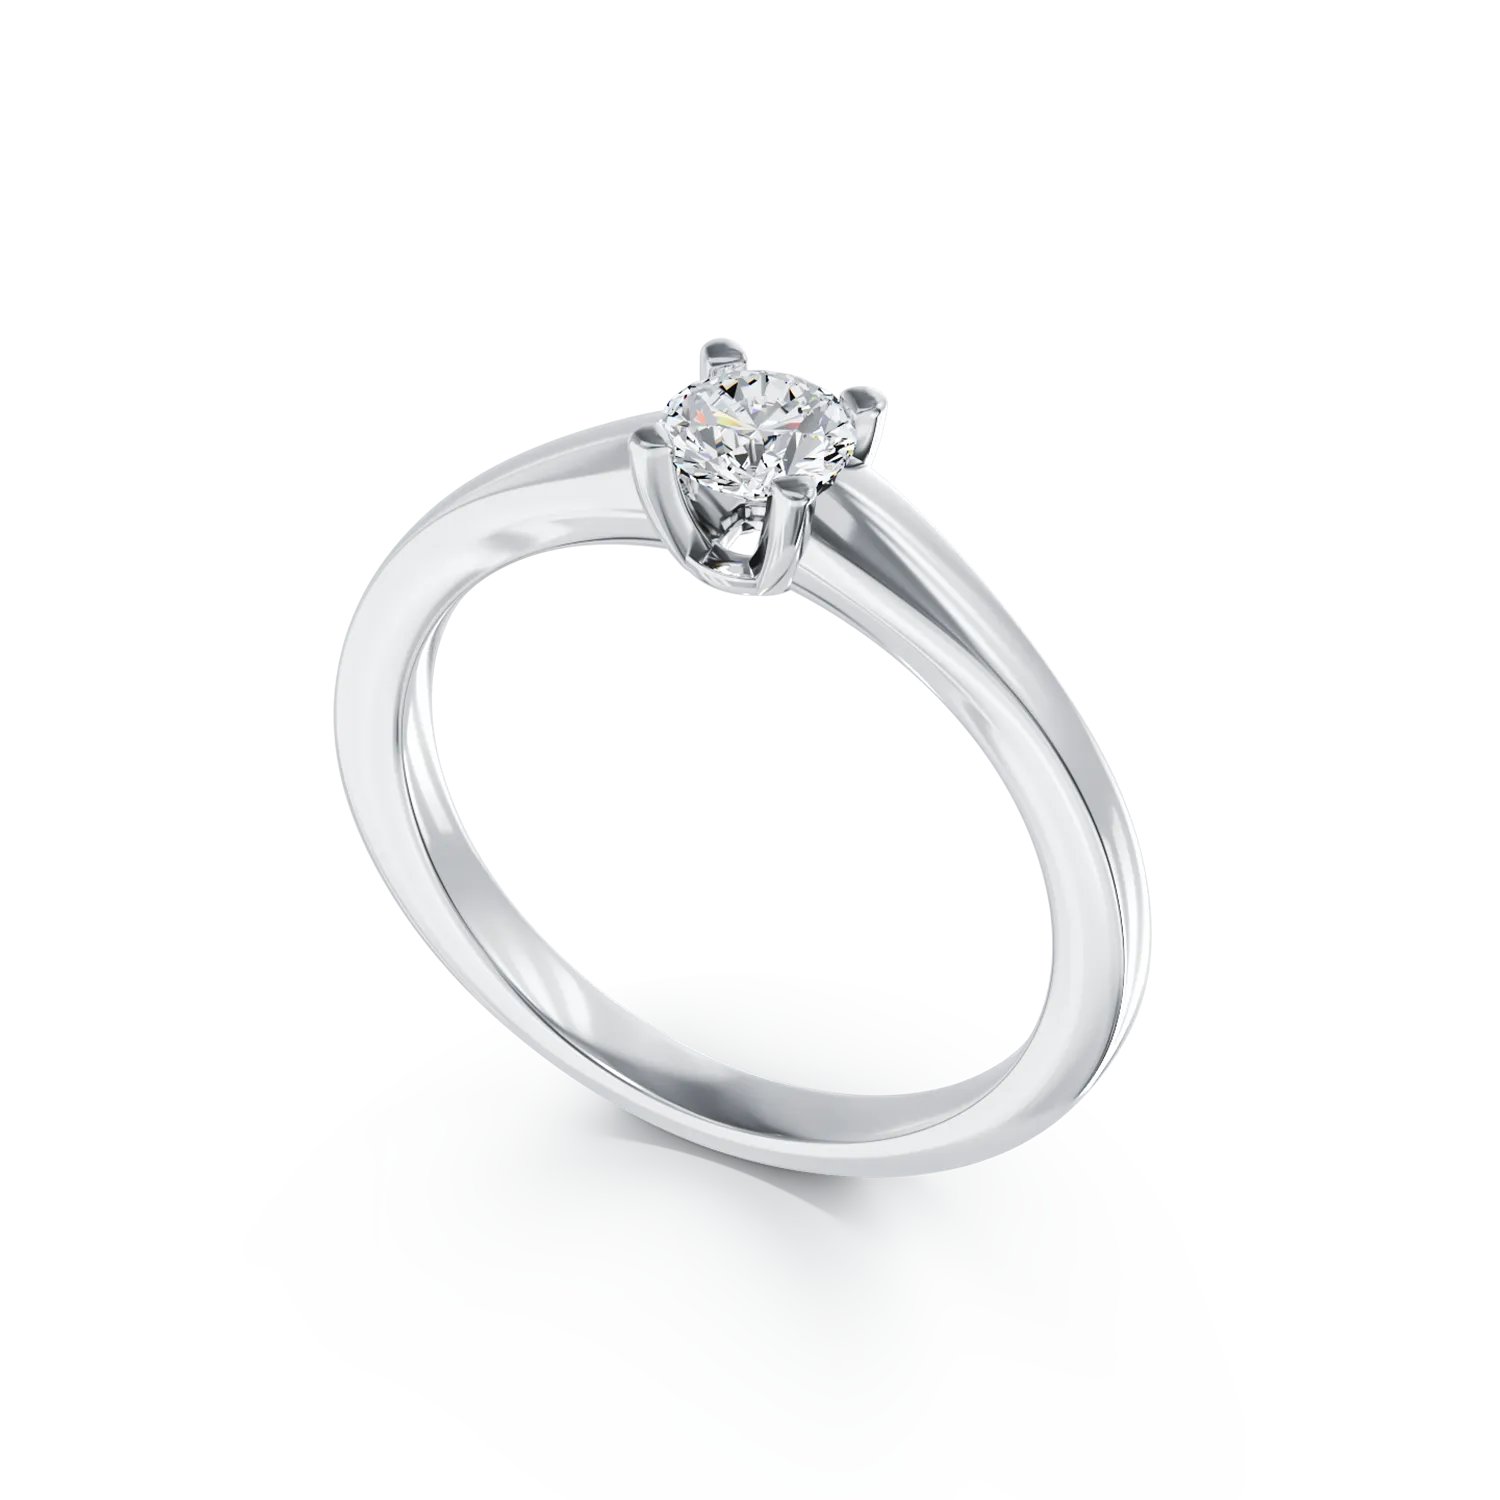 Eljegyzési gyűrű 18K-os fehér aranyból 0,31ct gyémánttal. Gramm: 2,7